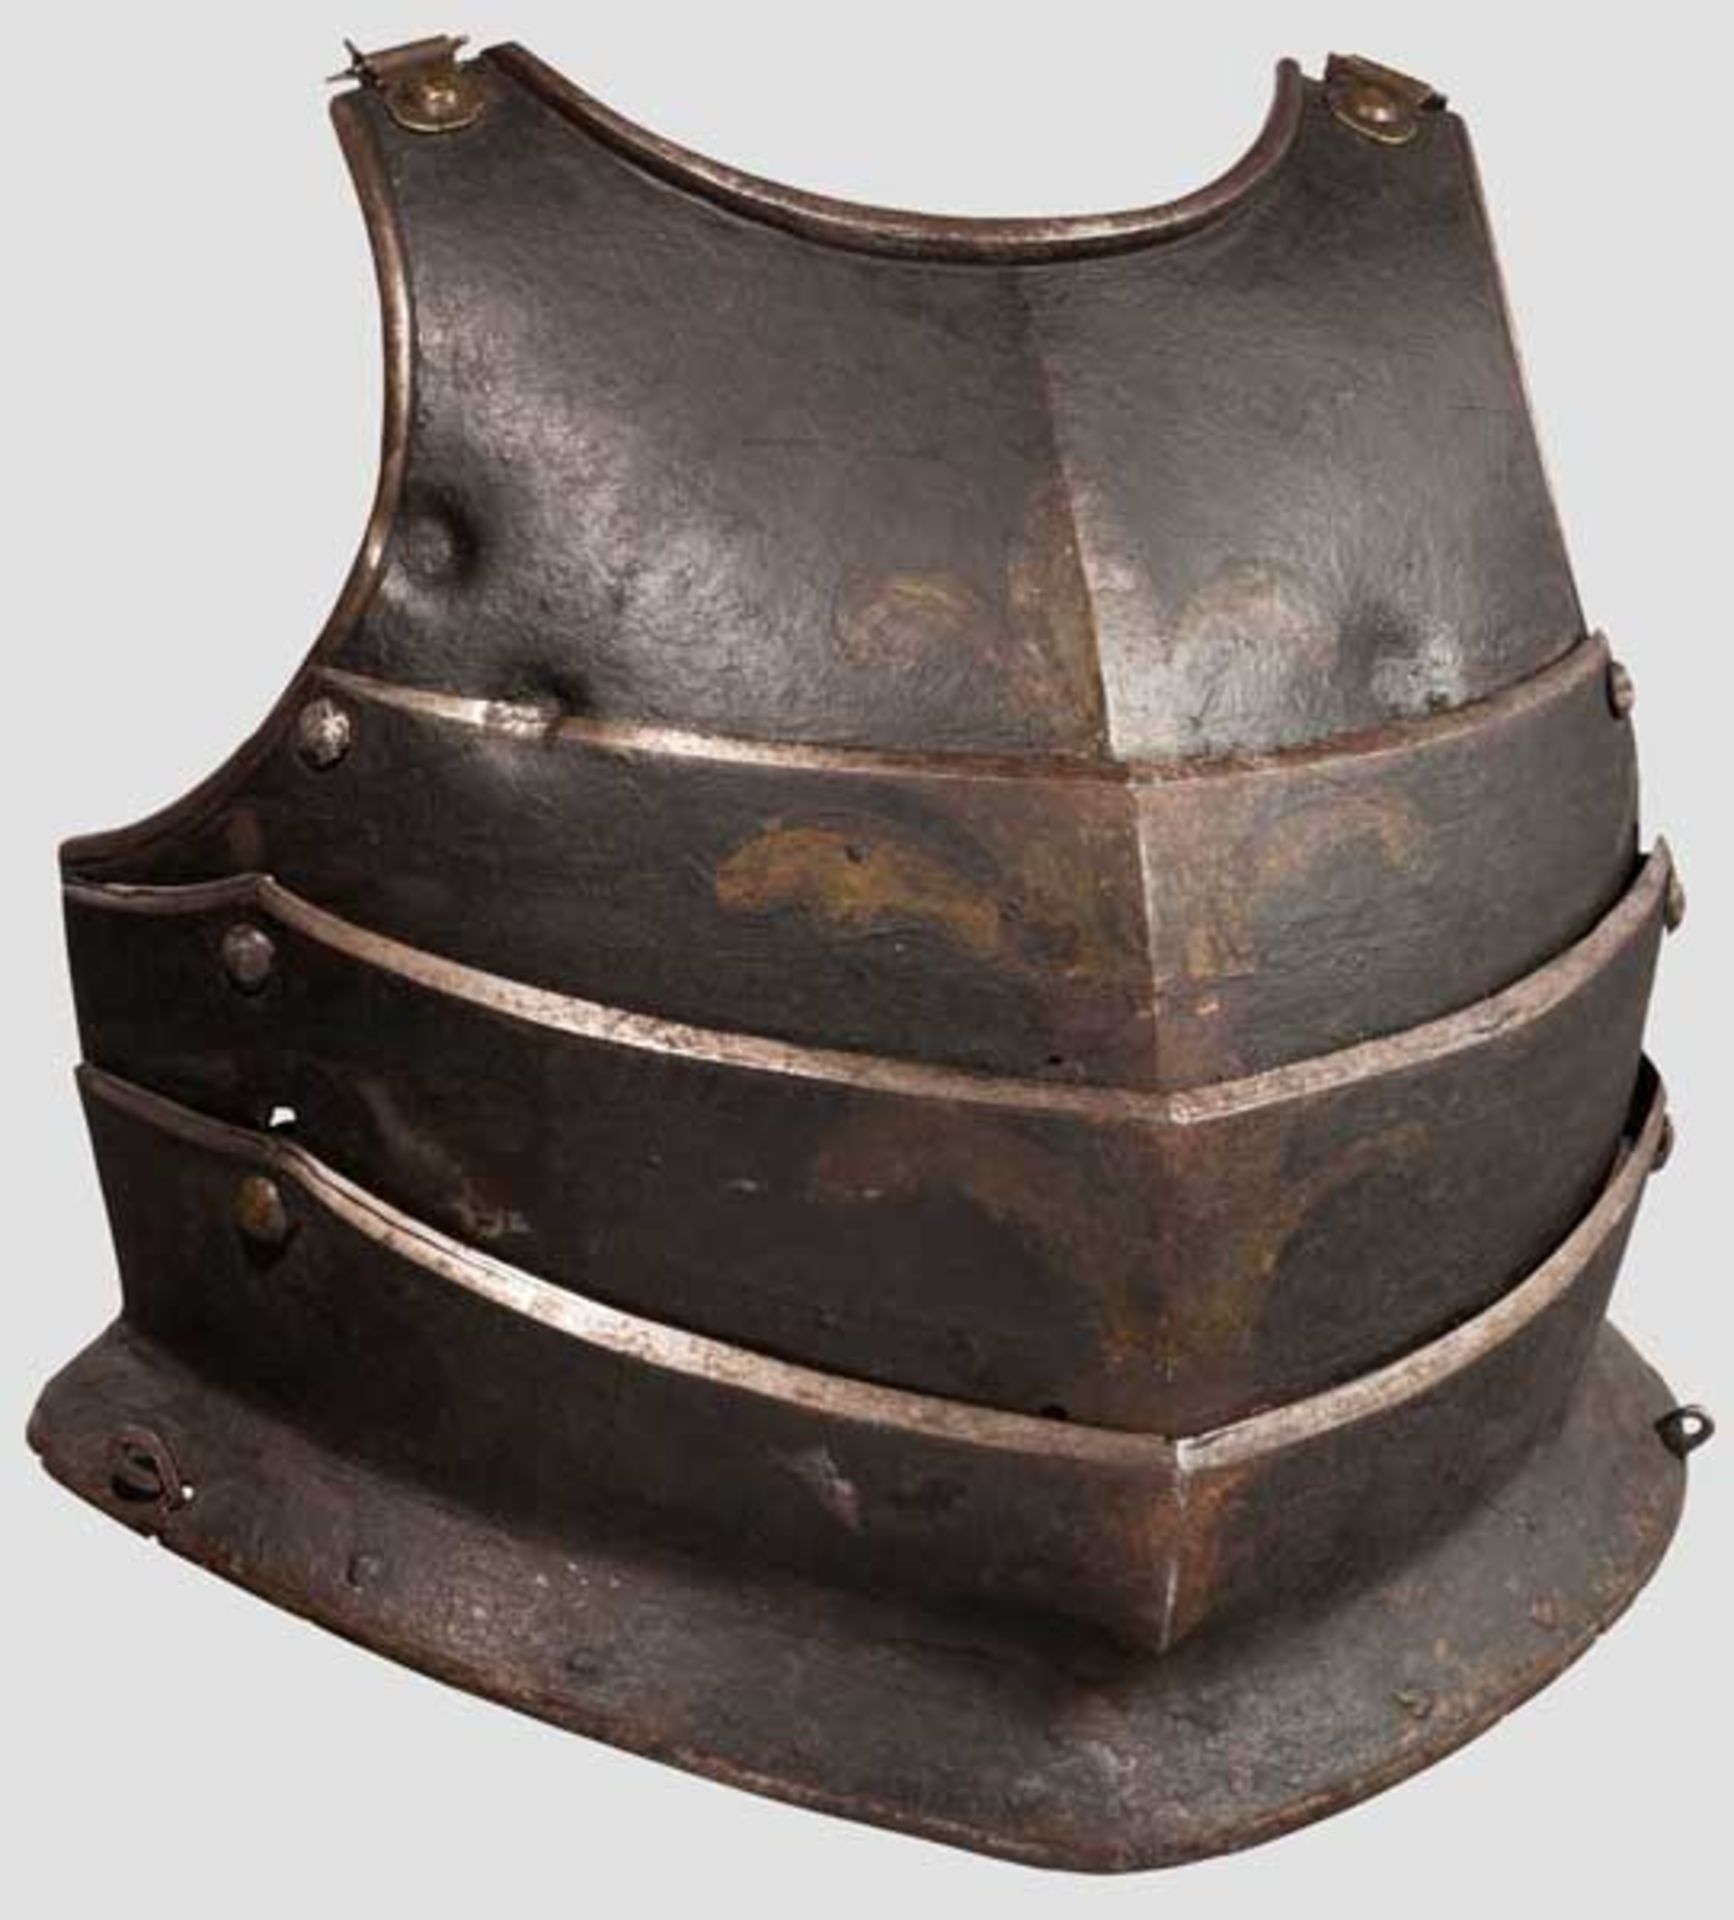 Kugelfeste Kürassbrust, Ungarn oder Polen um 1620 Schwere, dreifach beweglich geschobene Brustplatte